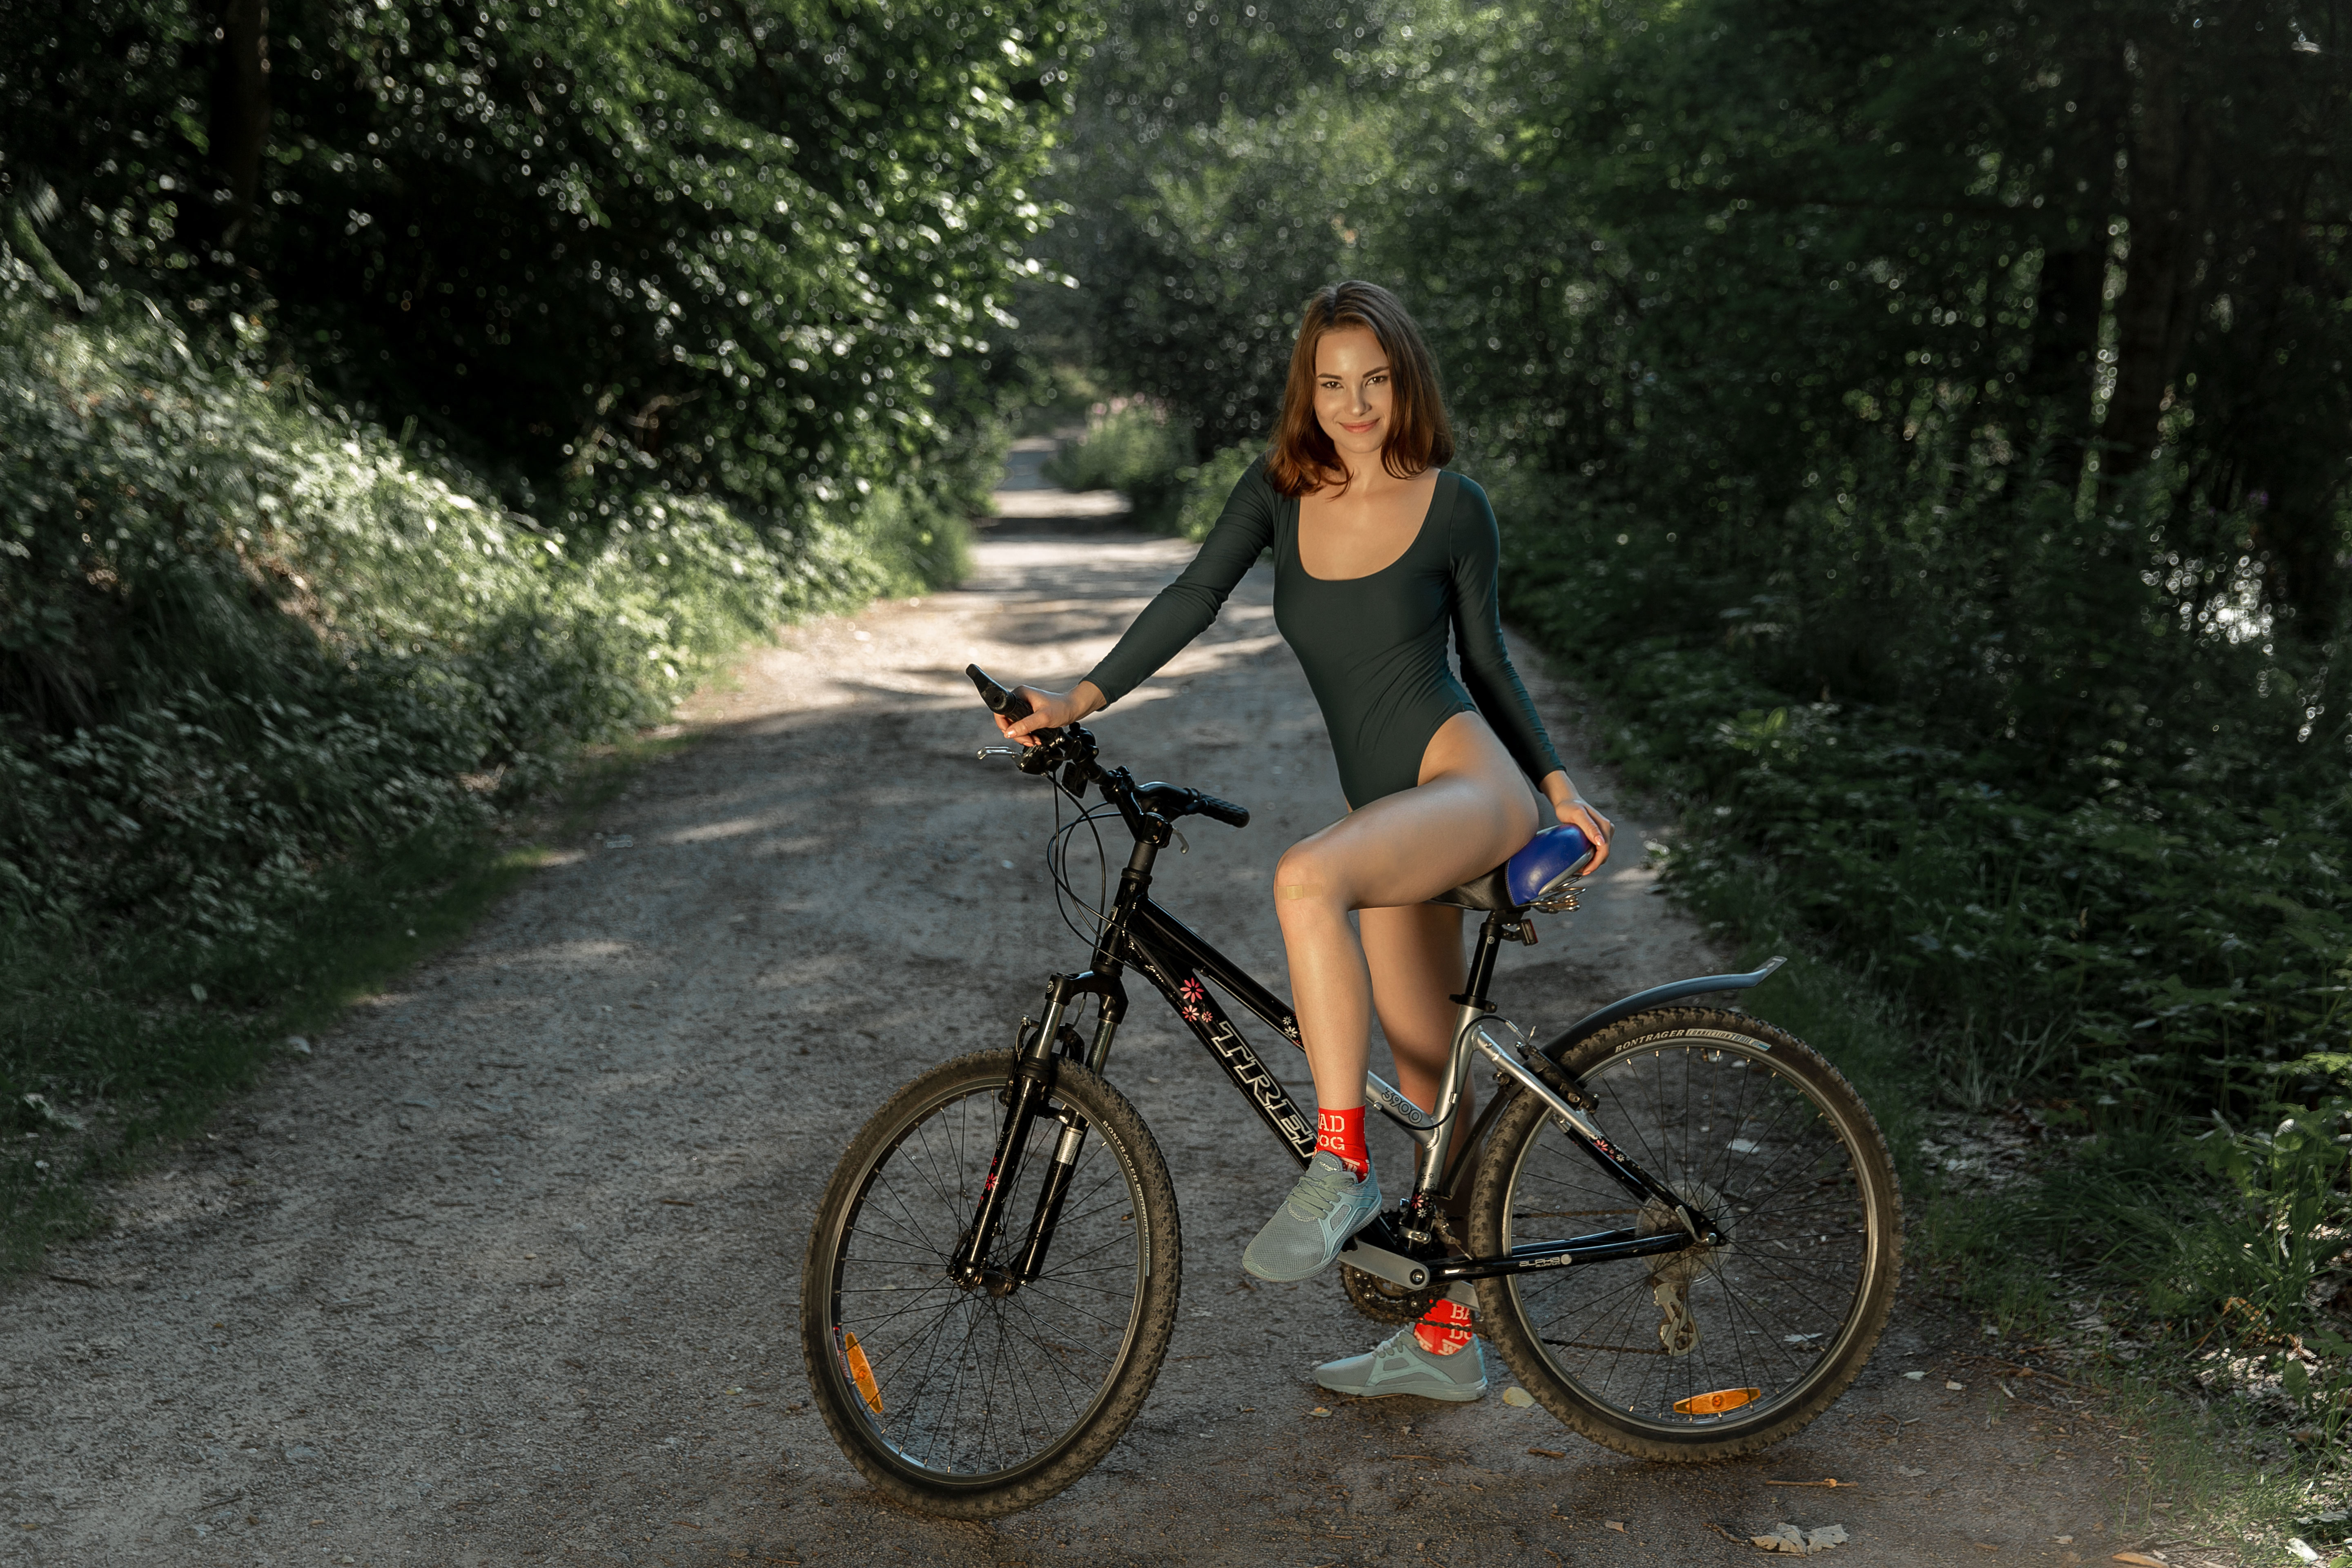 Раздетая девушка с велосипедом на фото